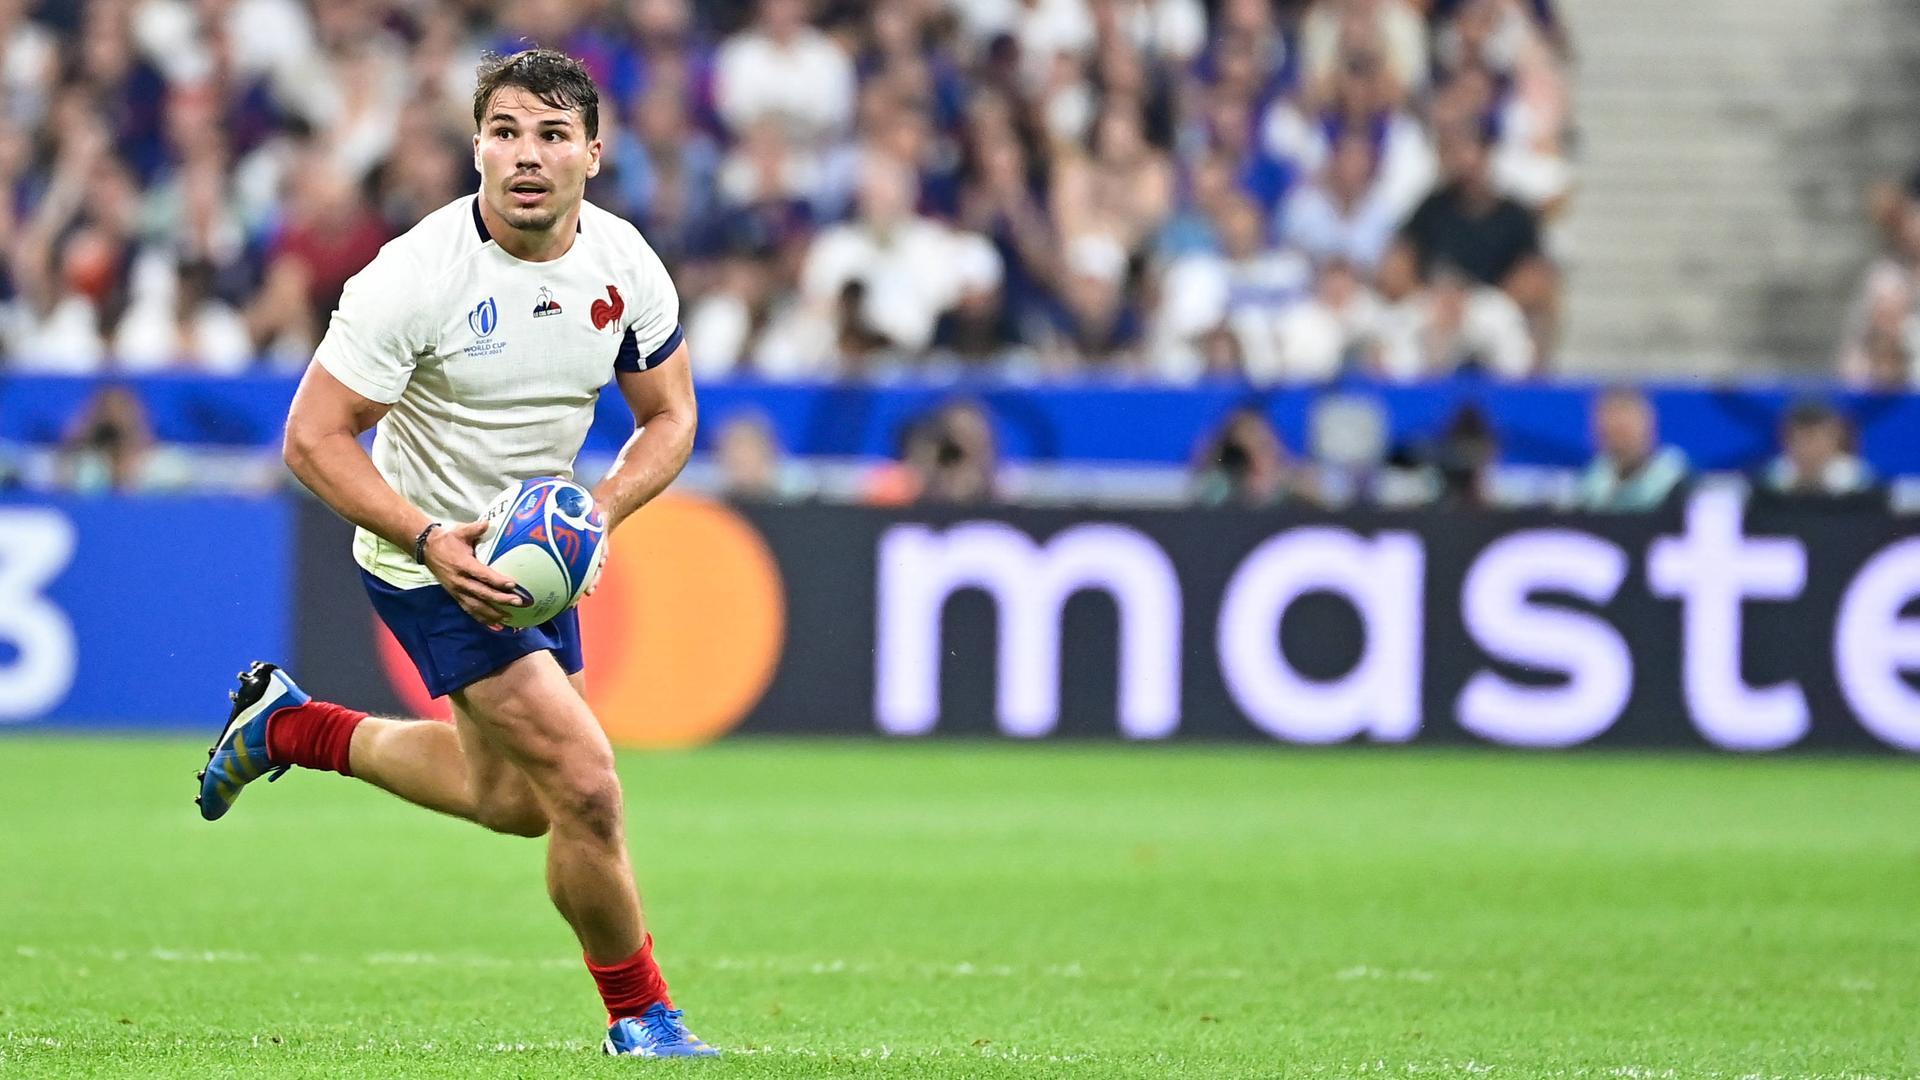 Antoine Dupont lenkt das Spiel der französischen Rugby-Nationalmannschaft.